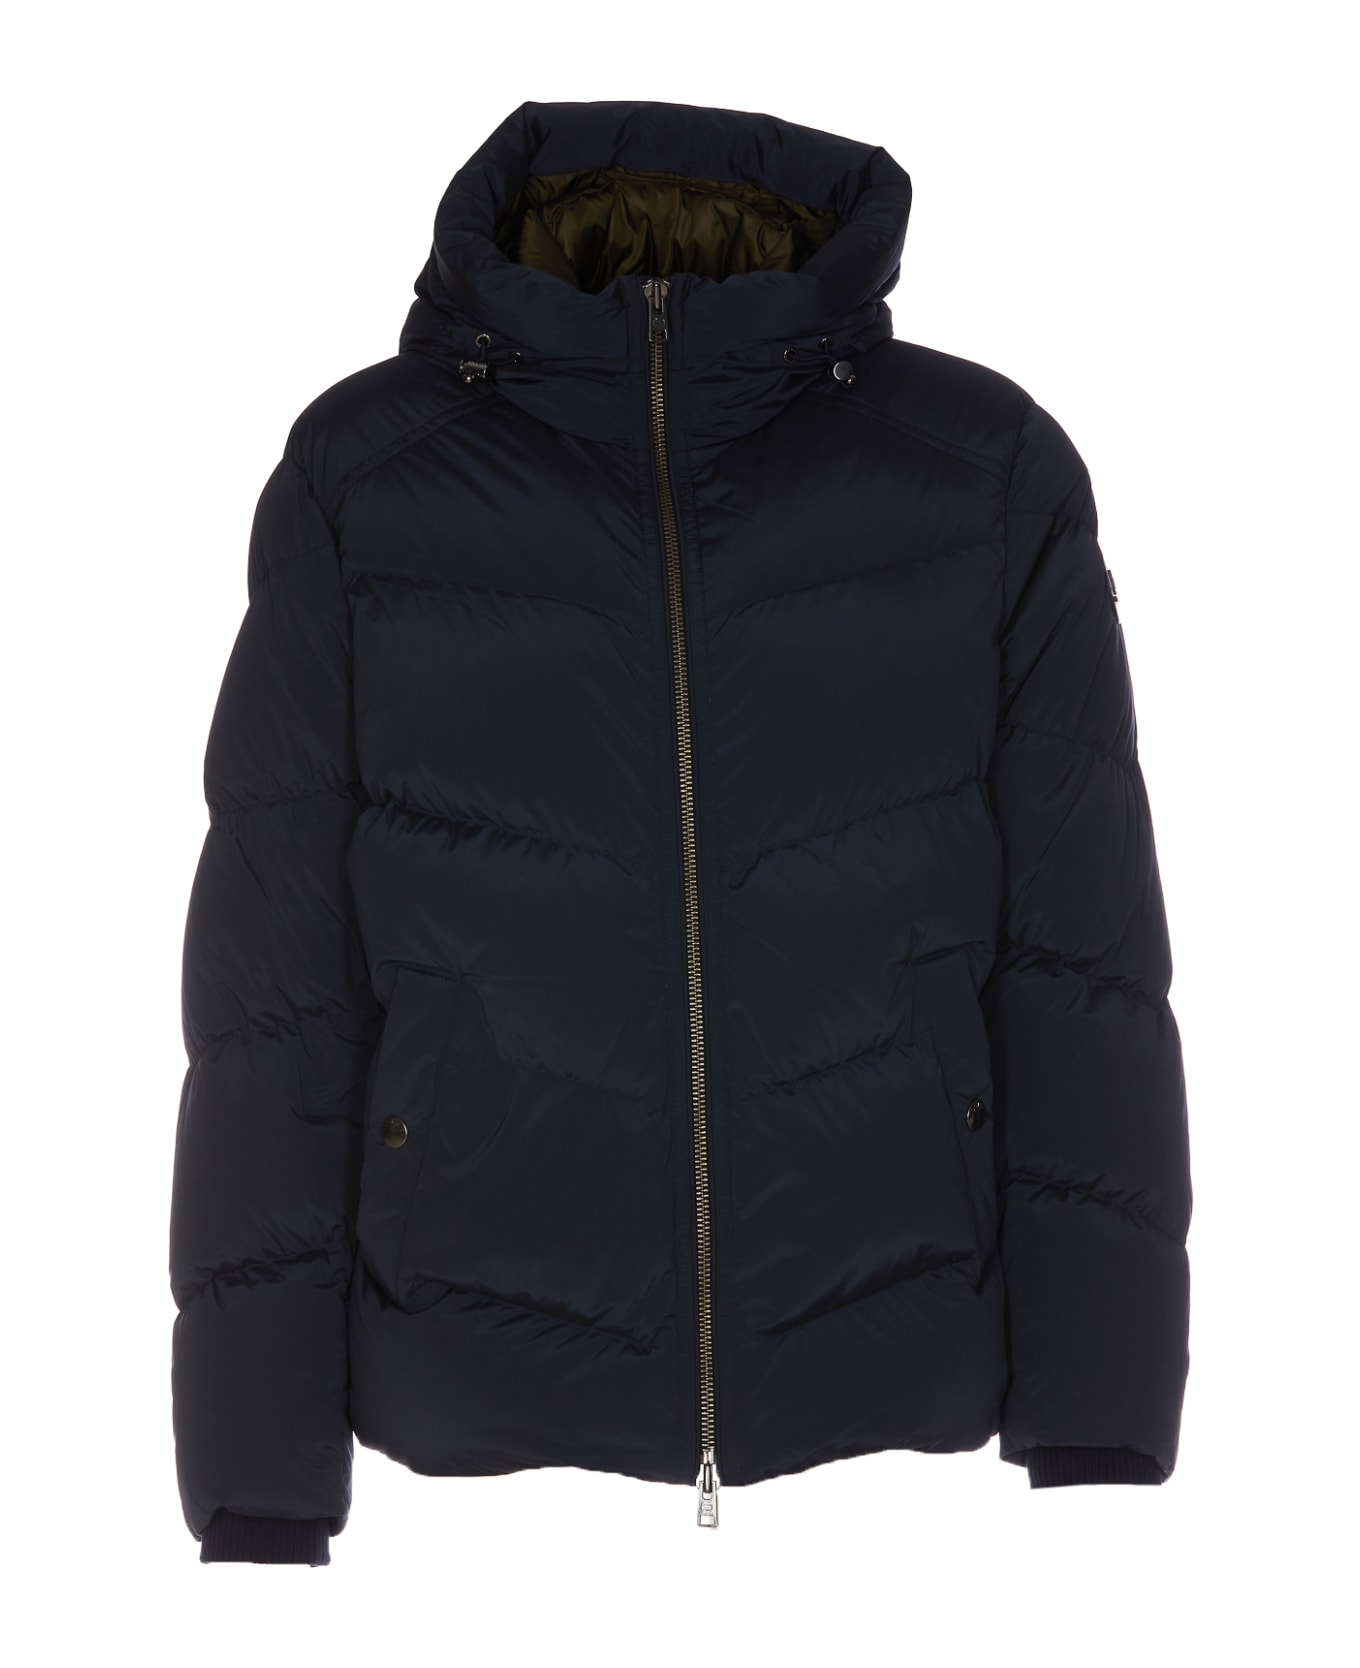 Woolrich Premium Down Jacket - 3989